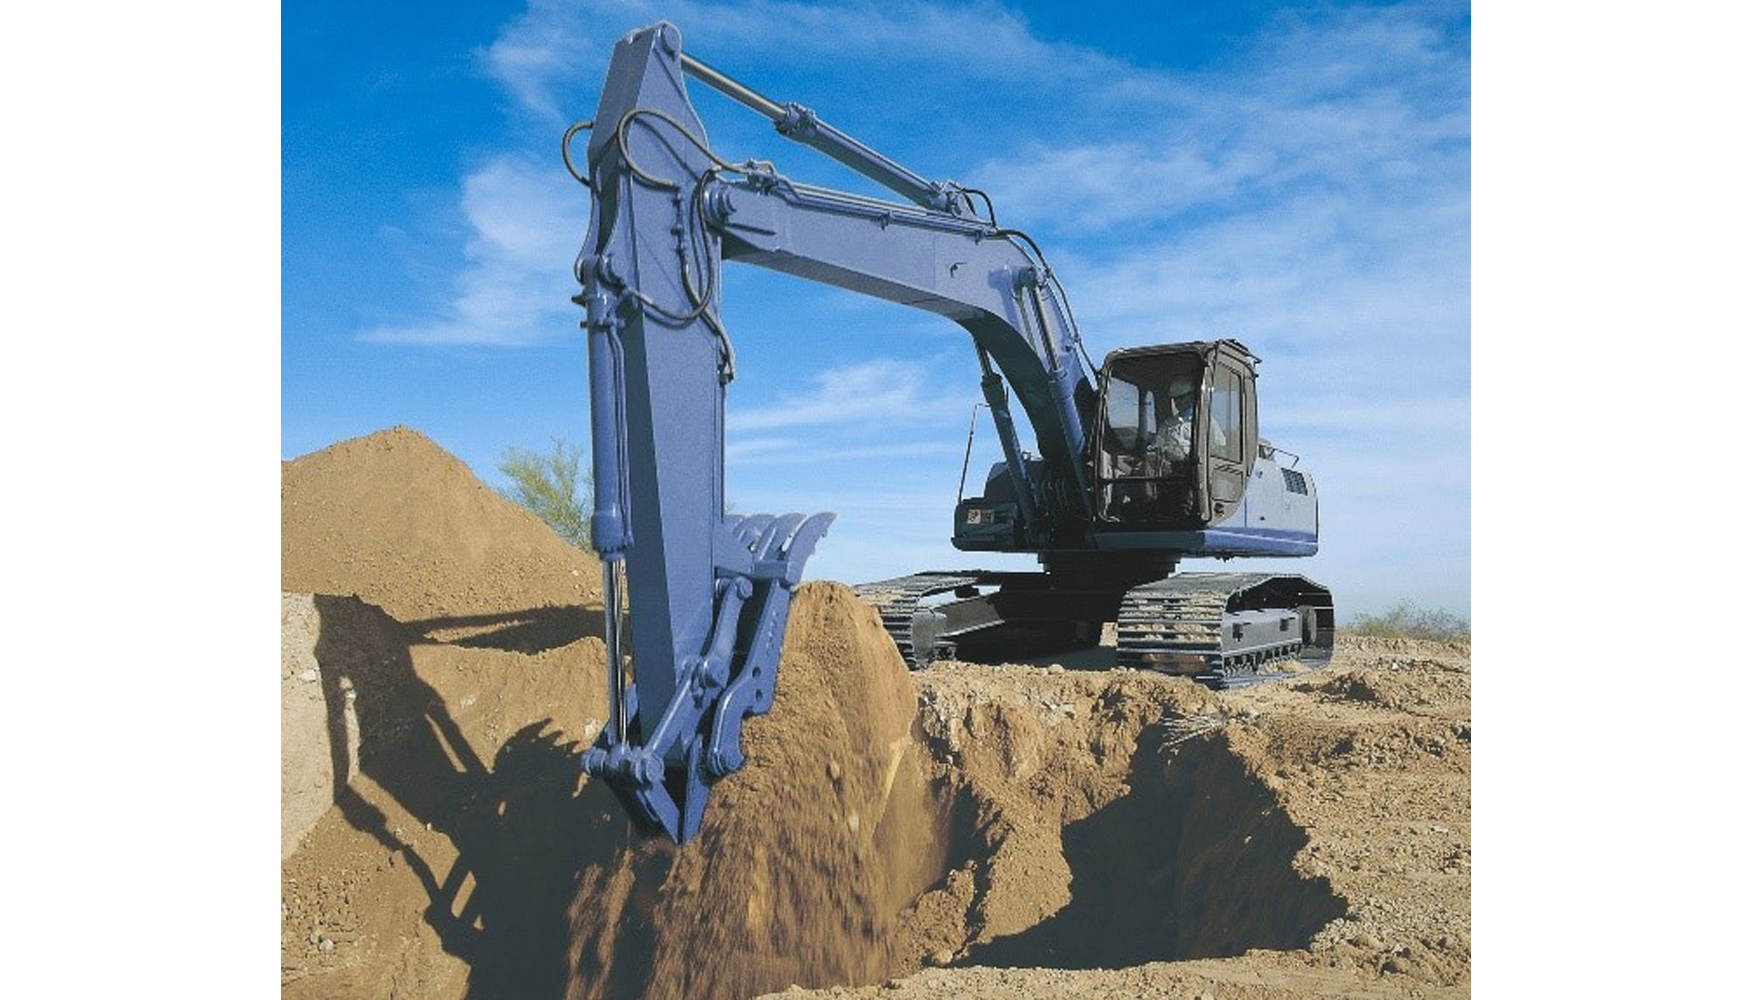 Lnea Service para excavadoras de 13, 20 y 30 toneladas, terminada y disponible en stock